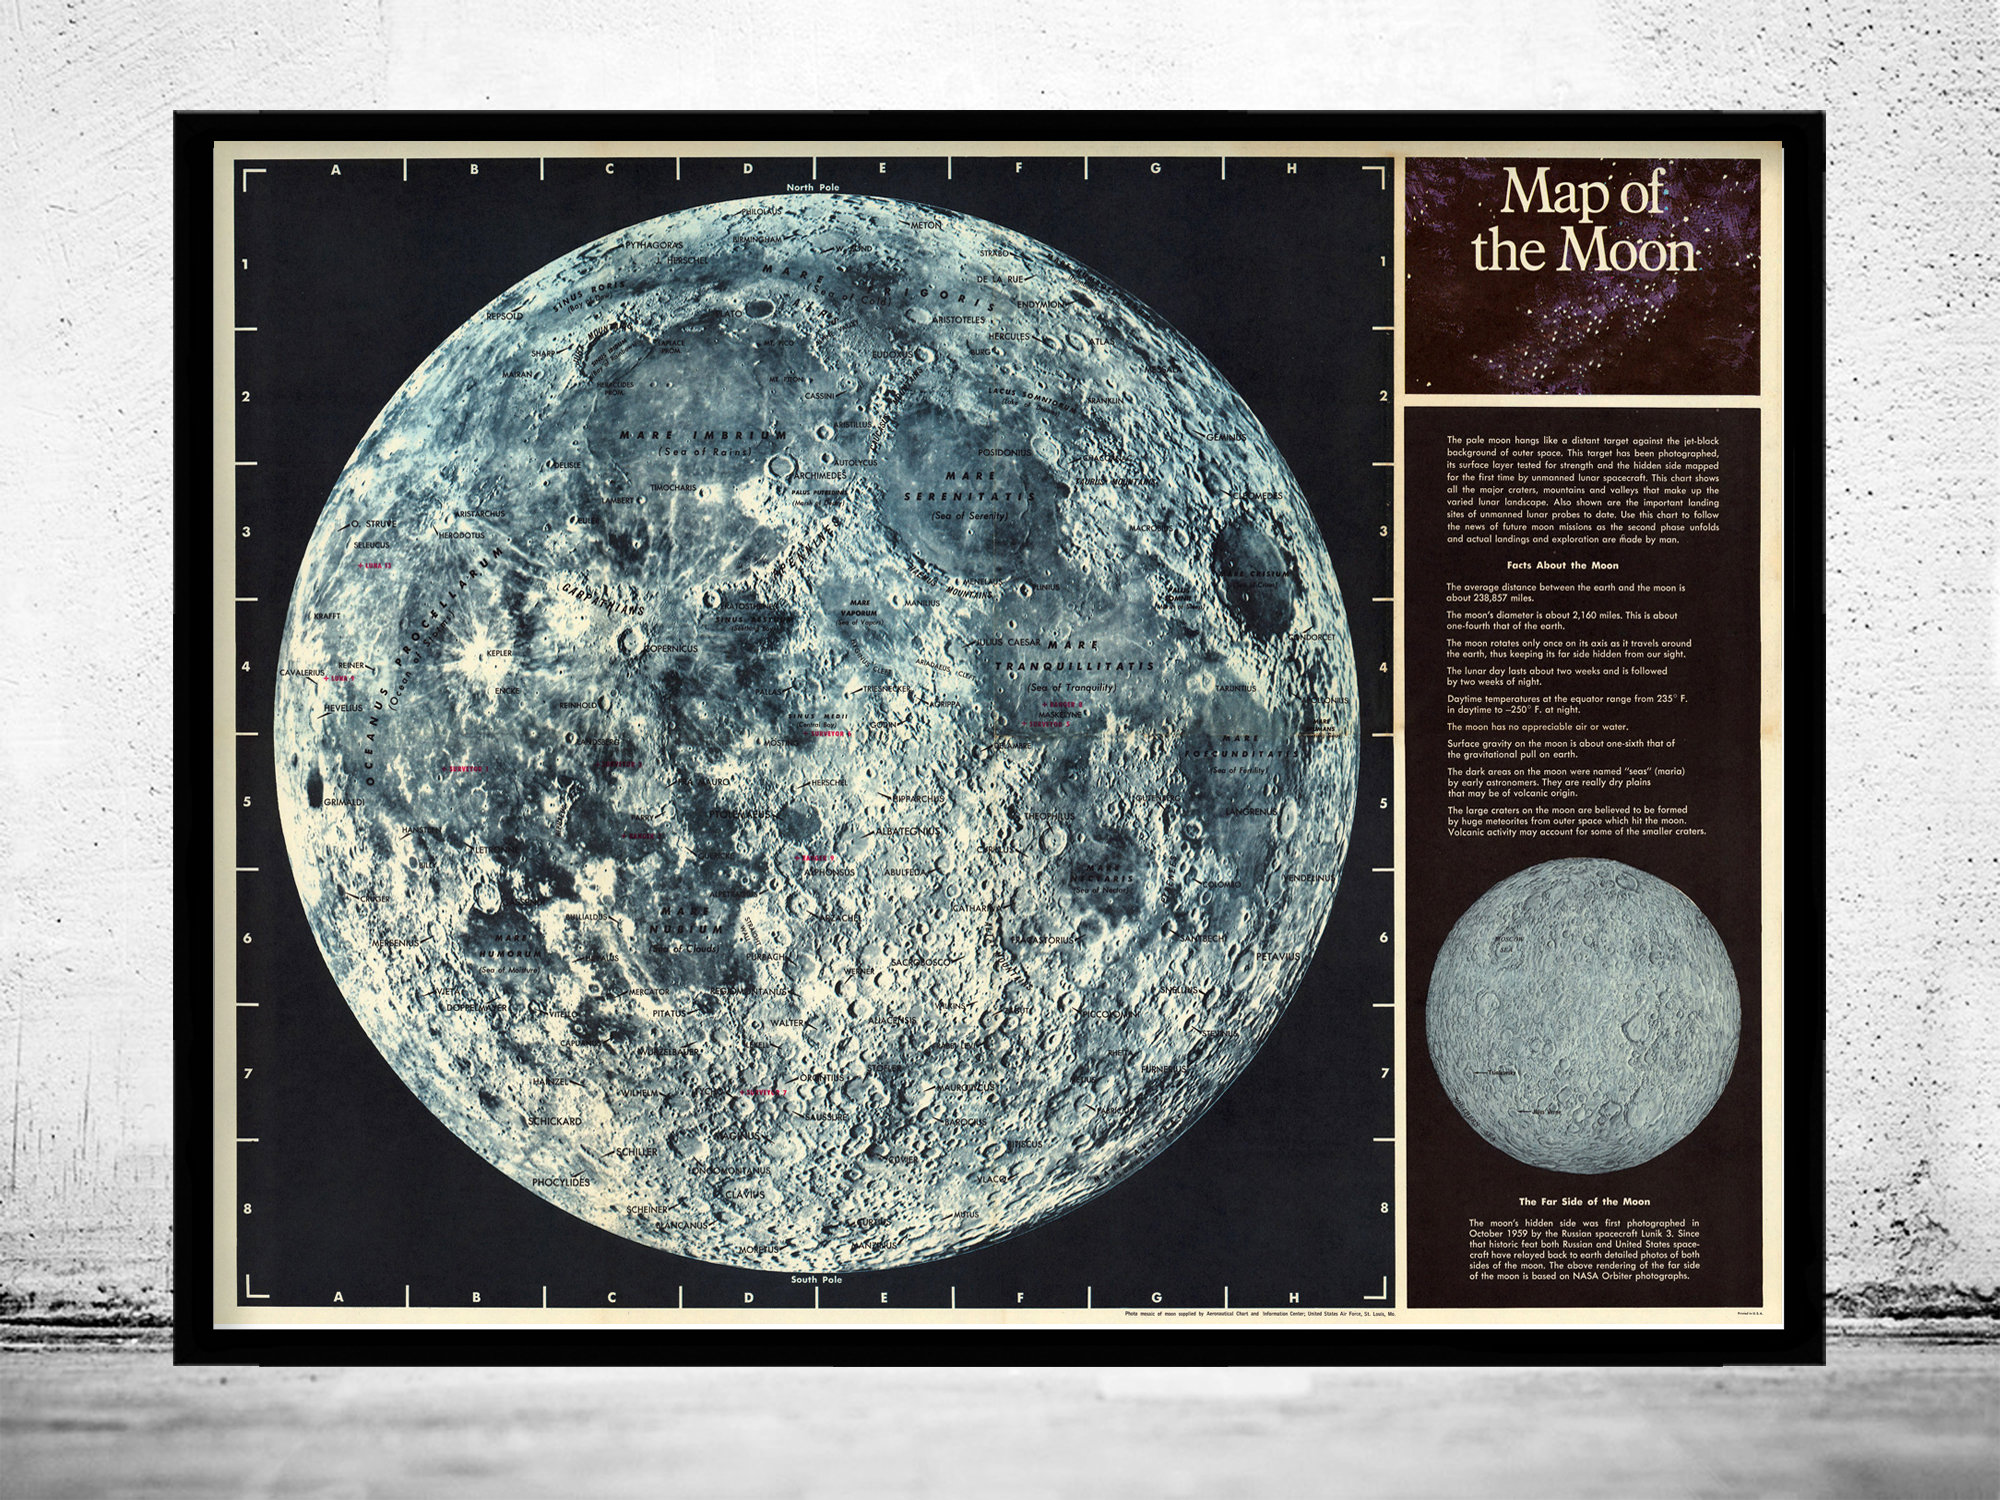 Races the moon. Карта Луны. Атлас Луны. Фотографический атлас Луны. Карта Луны высокого разрешения.